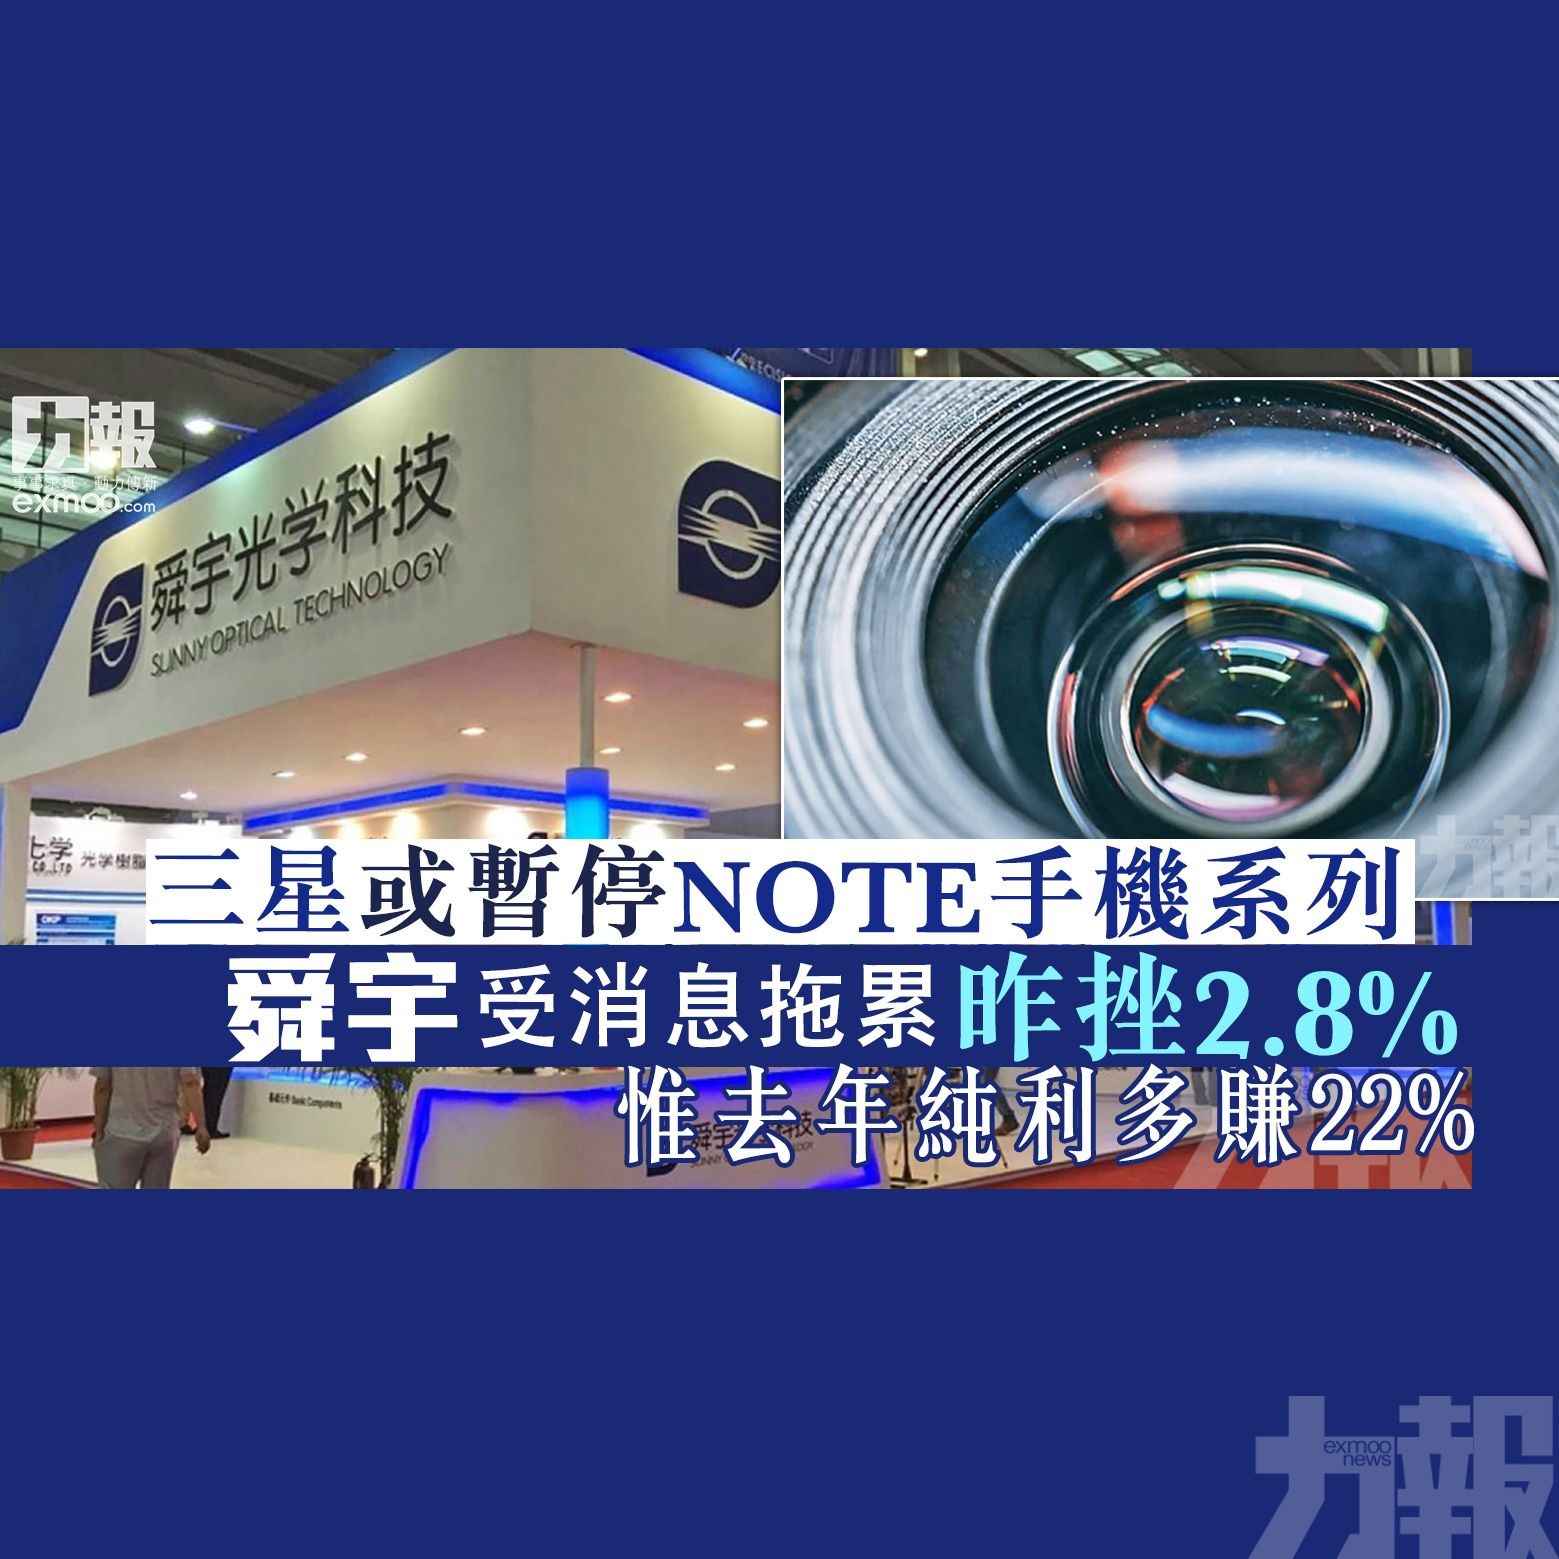 舜宇受消息拖累 昨挫2.8% 惟去年純利多賺22%